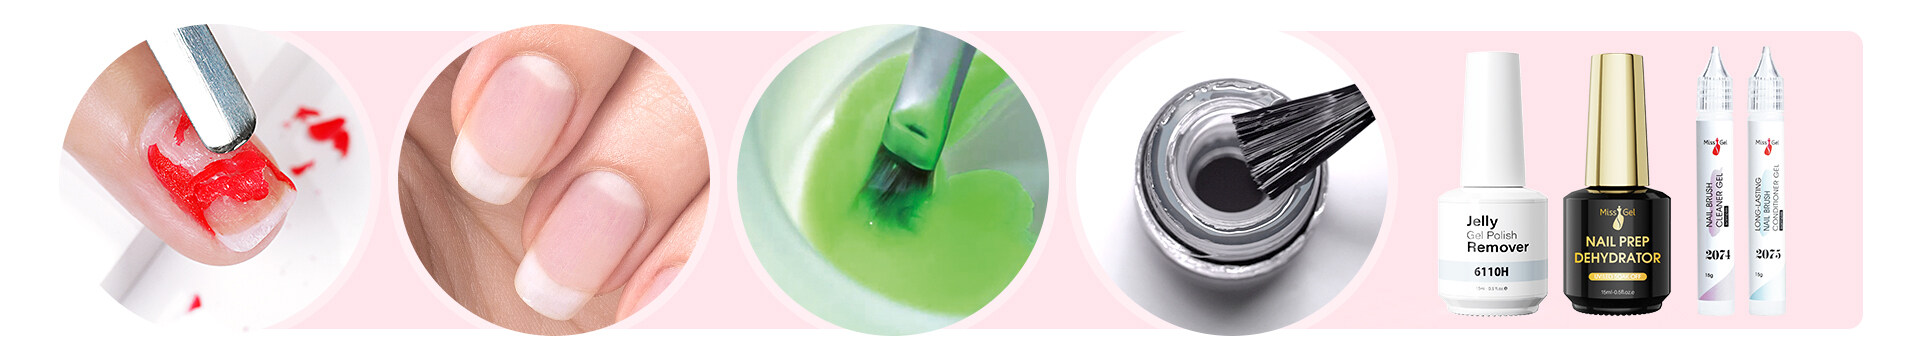 nail brush cleaner; Brush cleaner; gel nail brush cleaner; professional brush cleanser solution; Acrylic nail brush cleaner; nail brush cleaner liquid